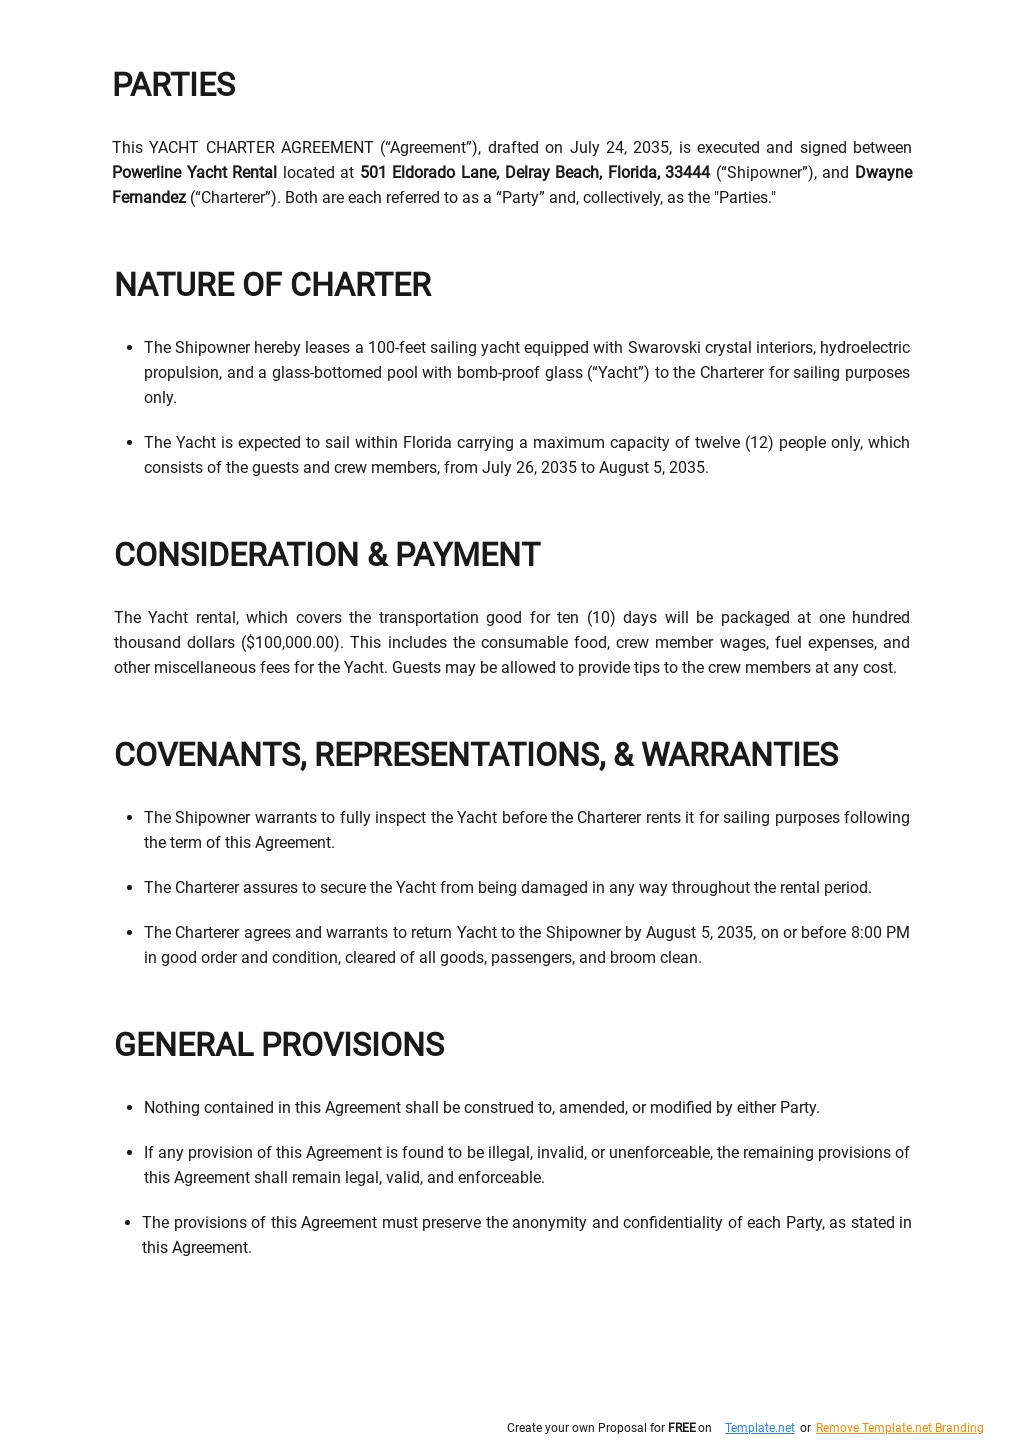 Yacht Charter Agreement Template - Google Docs, Word  Template.net Inside yacht charter agreement template